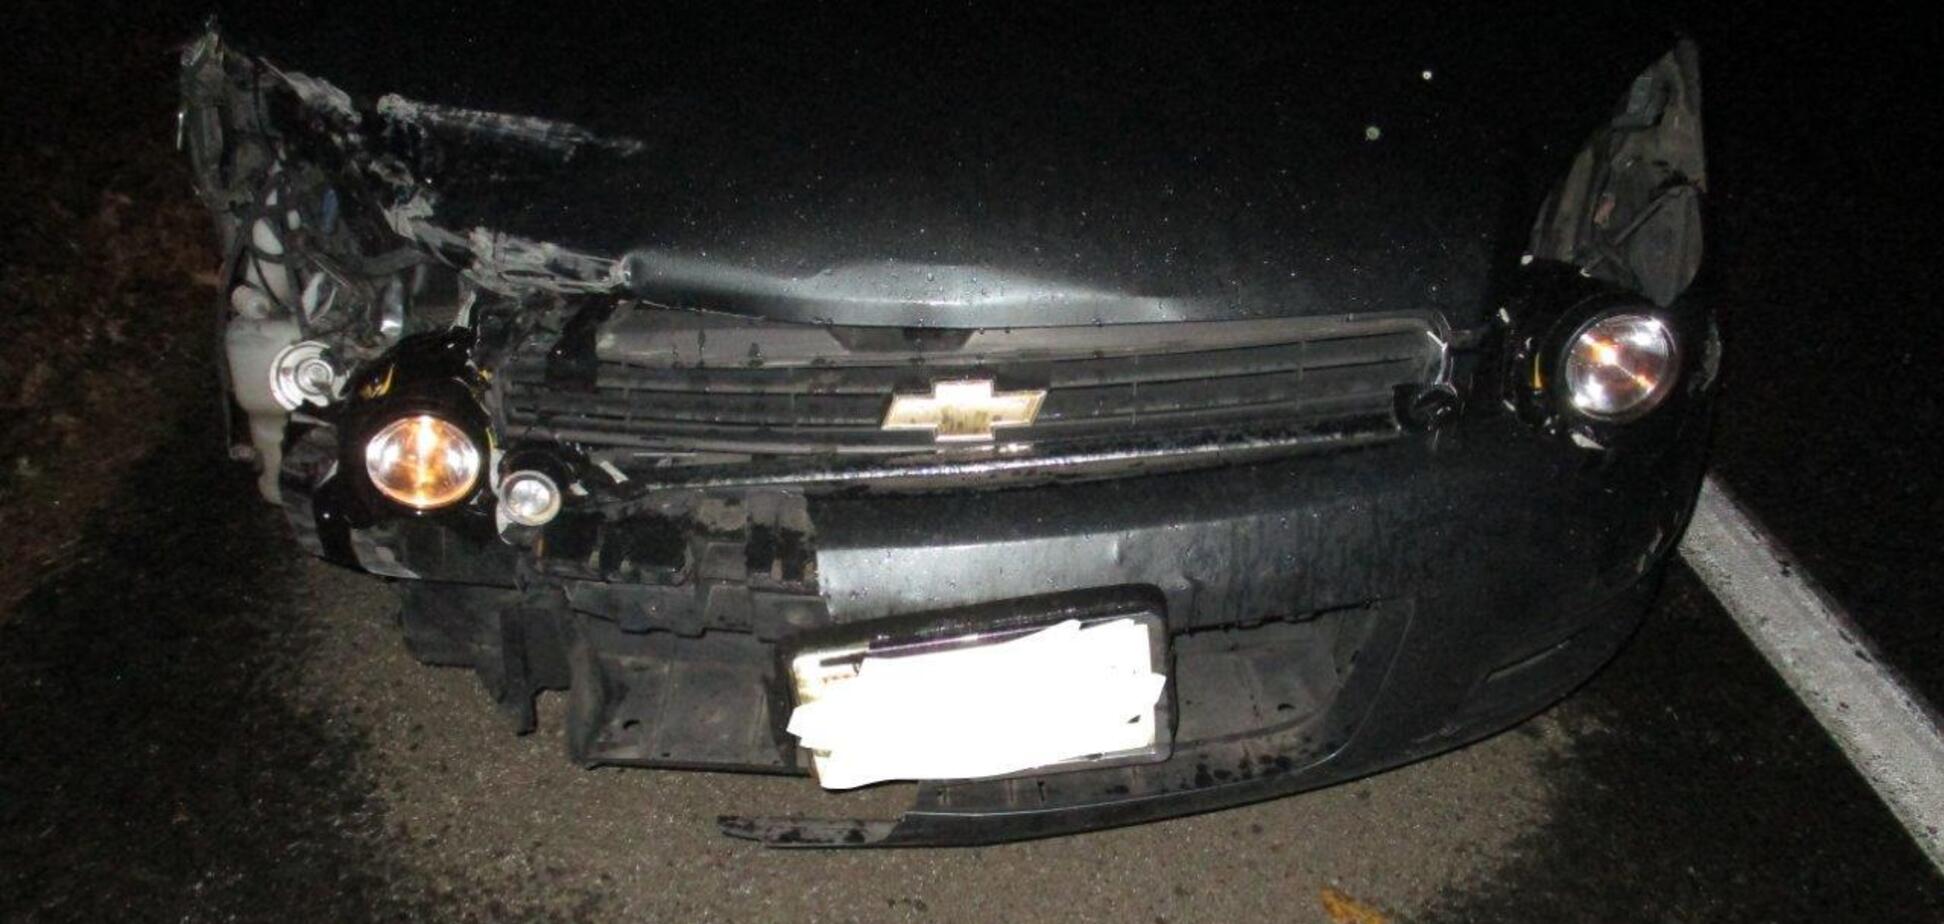 Поліція зупинила водія за використання звичайних ліхтариків замість фар